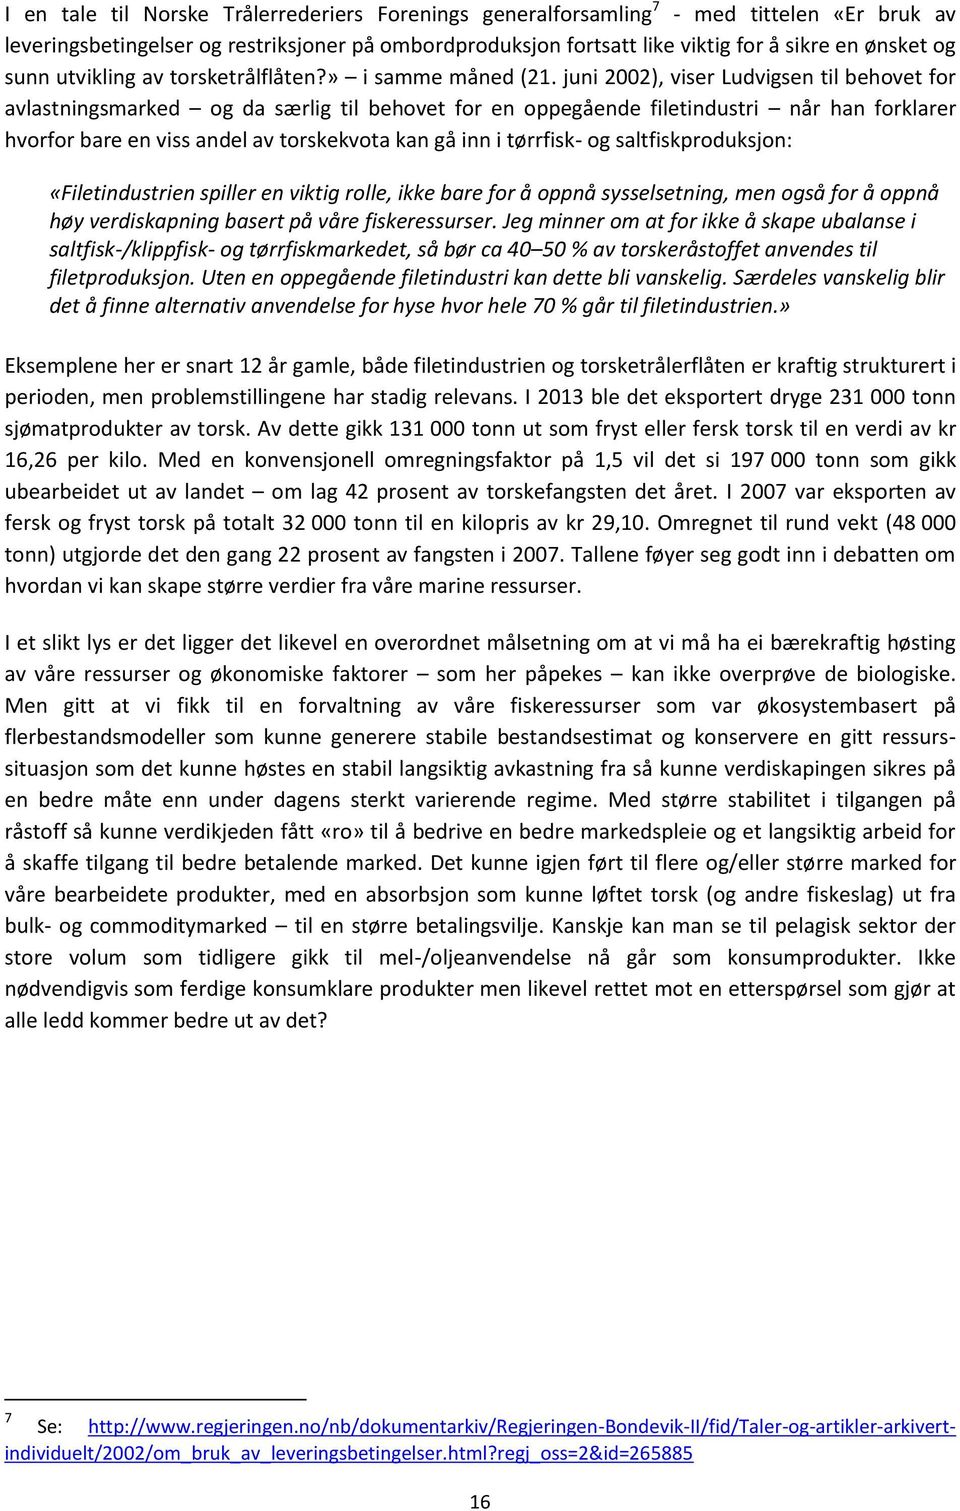 juni 2002), viser Ludvigsen til behovet for avlastningsmarked og da særlig til behovet for en oppegående filetindustri når han forklarer hvorfor bare en viss andel av torskekvota kan gå inn i